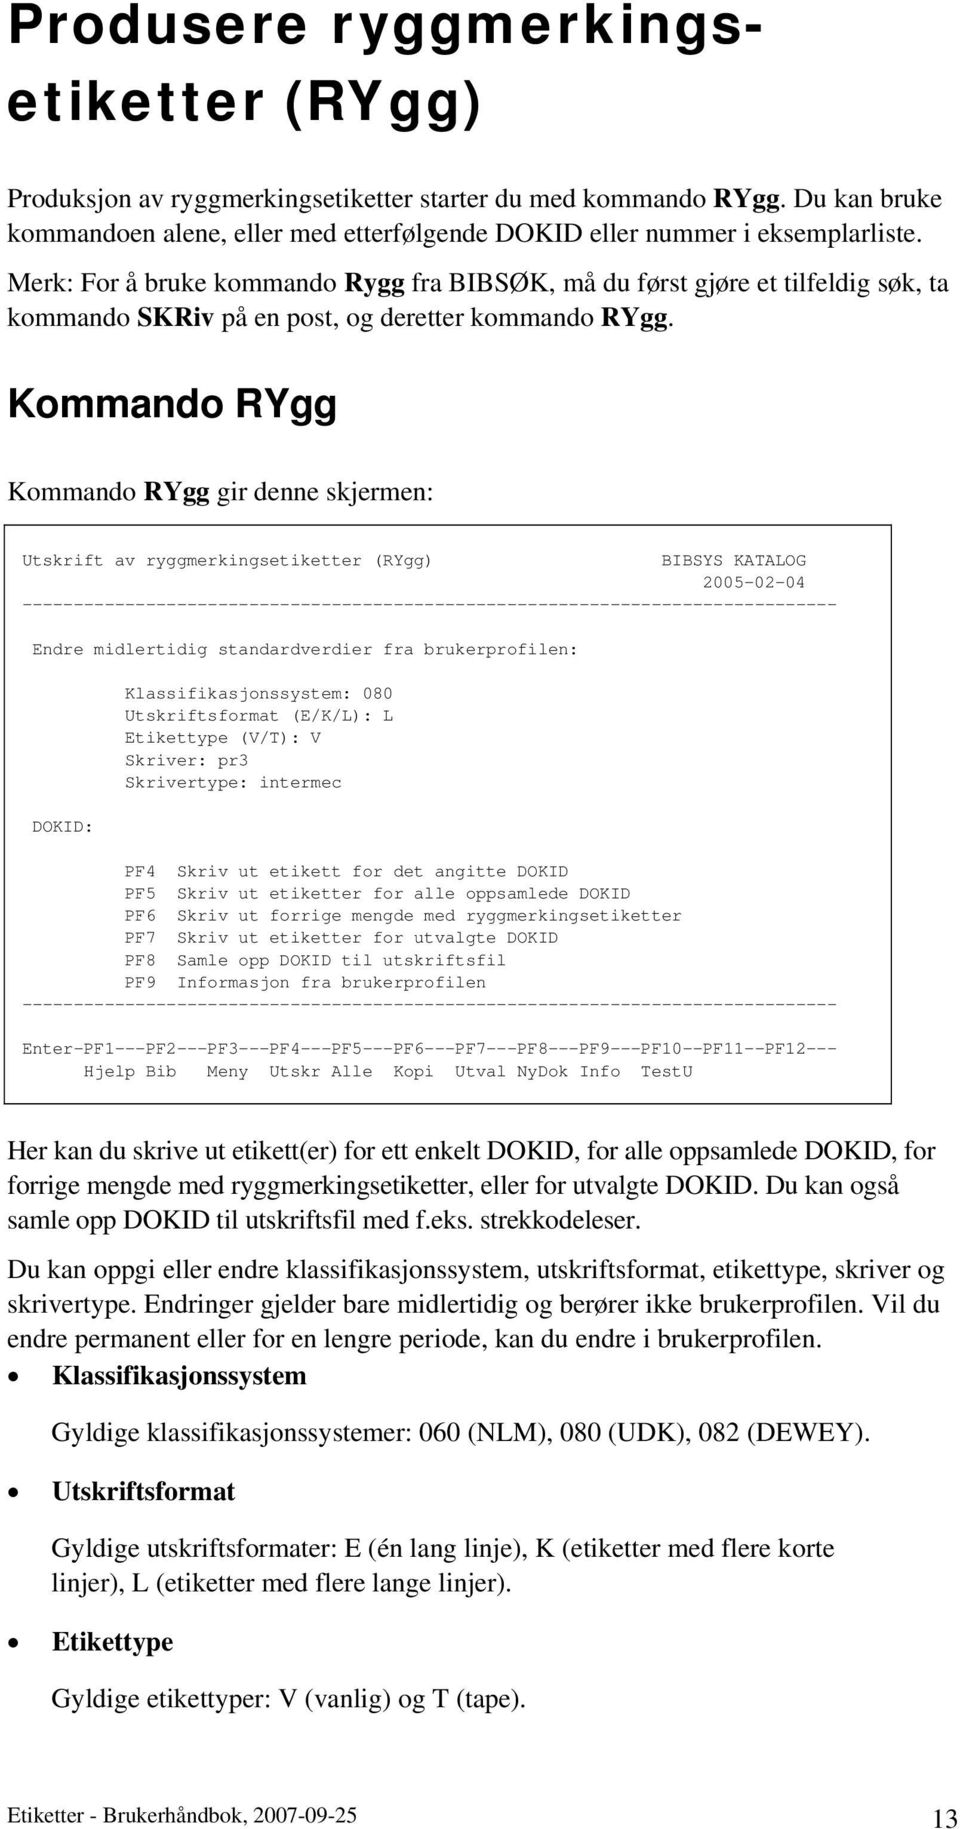 Kommando RYgg Kommando RYgg gir denne skjermen: Utskrift av ryggmerkingsetiketter (RYgg) BIBSYS KATALOG 2005-02-04 Endre midlertidig standardverdier fra brukerprofilen: DOKID: Klassifikasjonssystem: